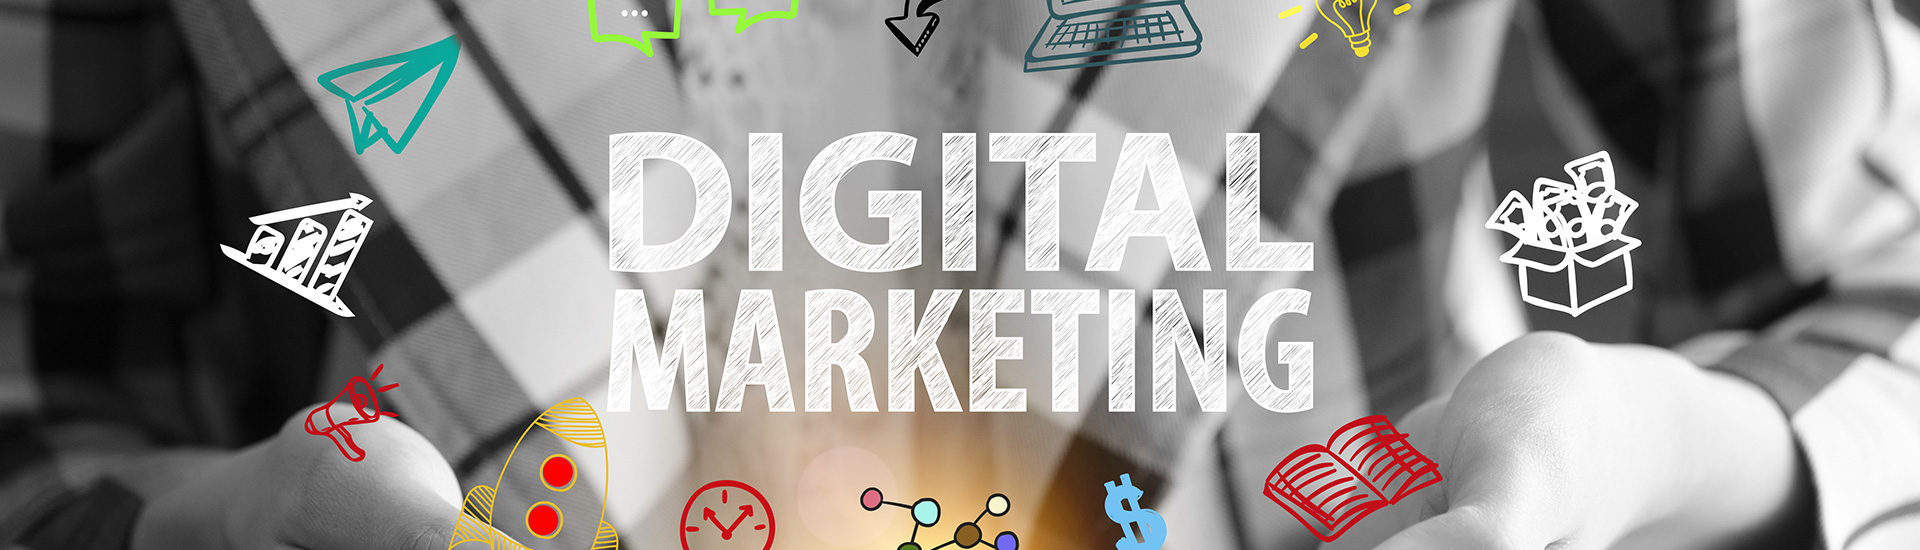 Digital marketing images